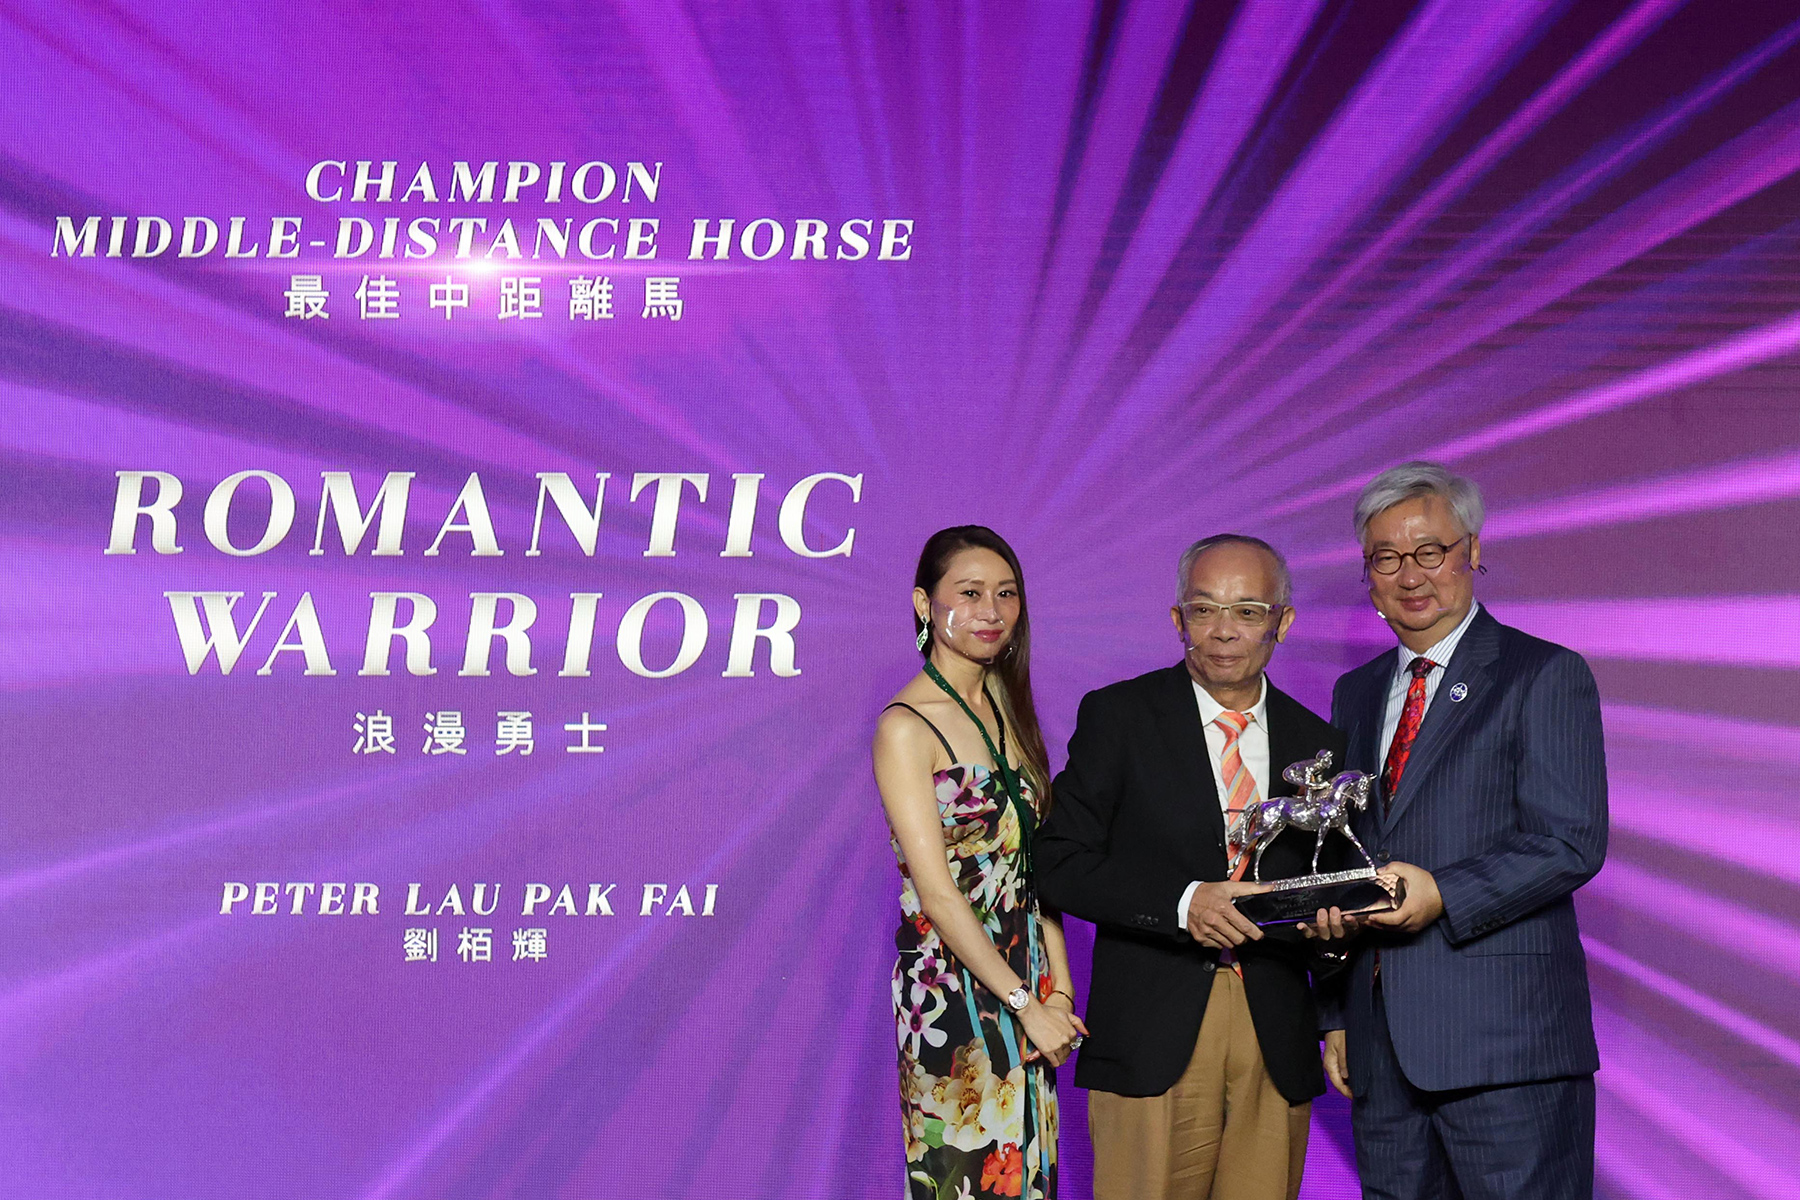 香港賽馬會董事楊紹信博士頒發最佳中距離馬獎座予「浪漫勇士」的馬主劉栢輝先生。